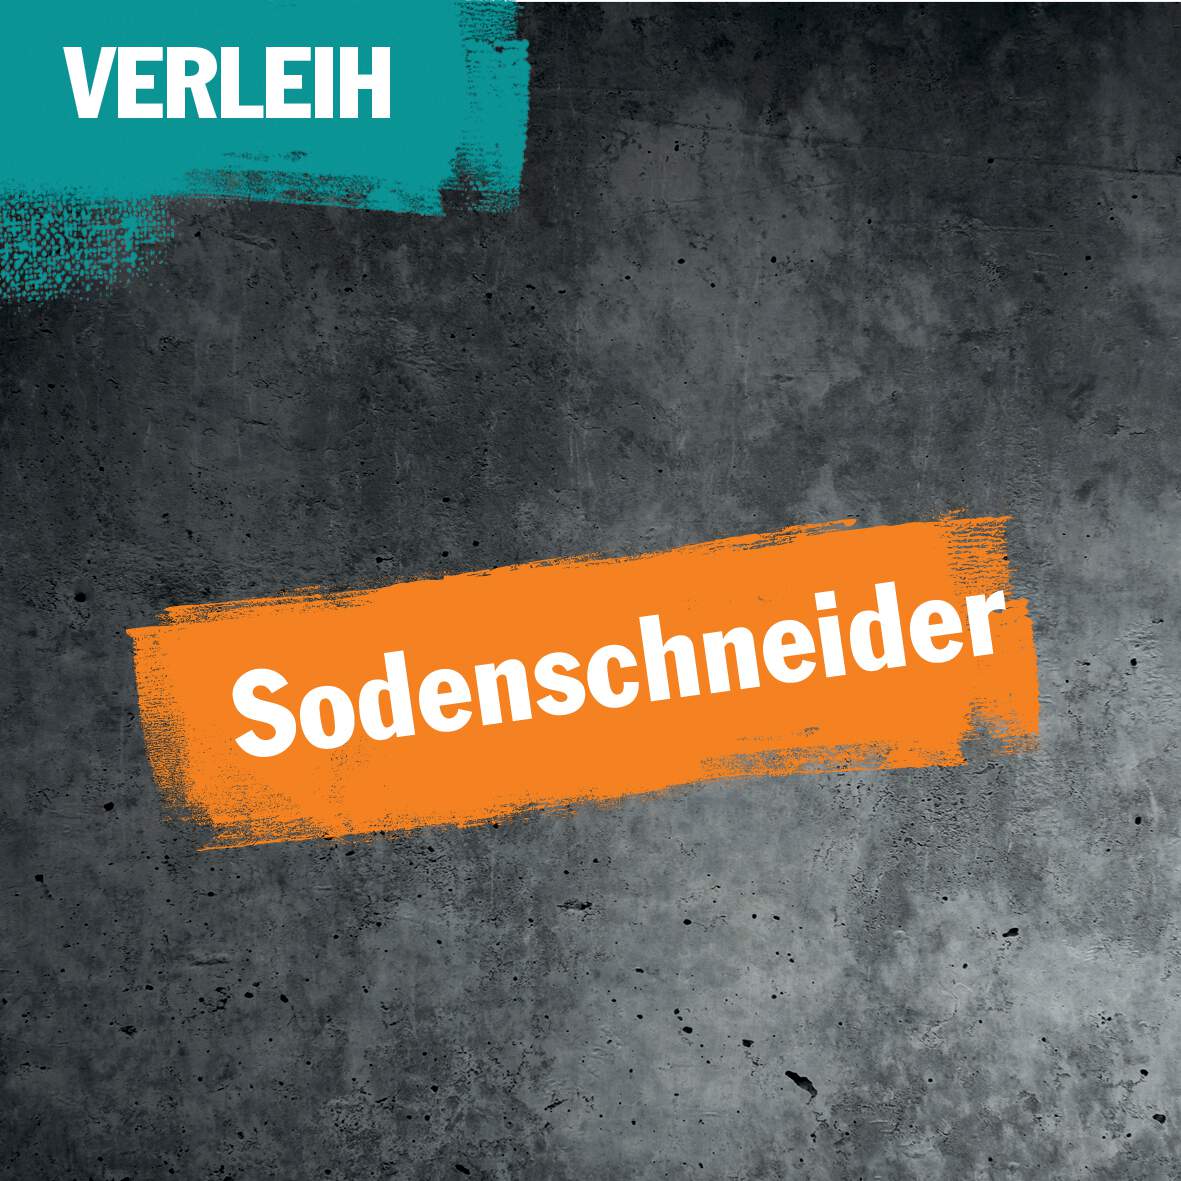 1256650 - Verleih Sodenschneider